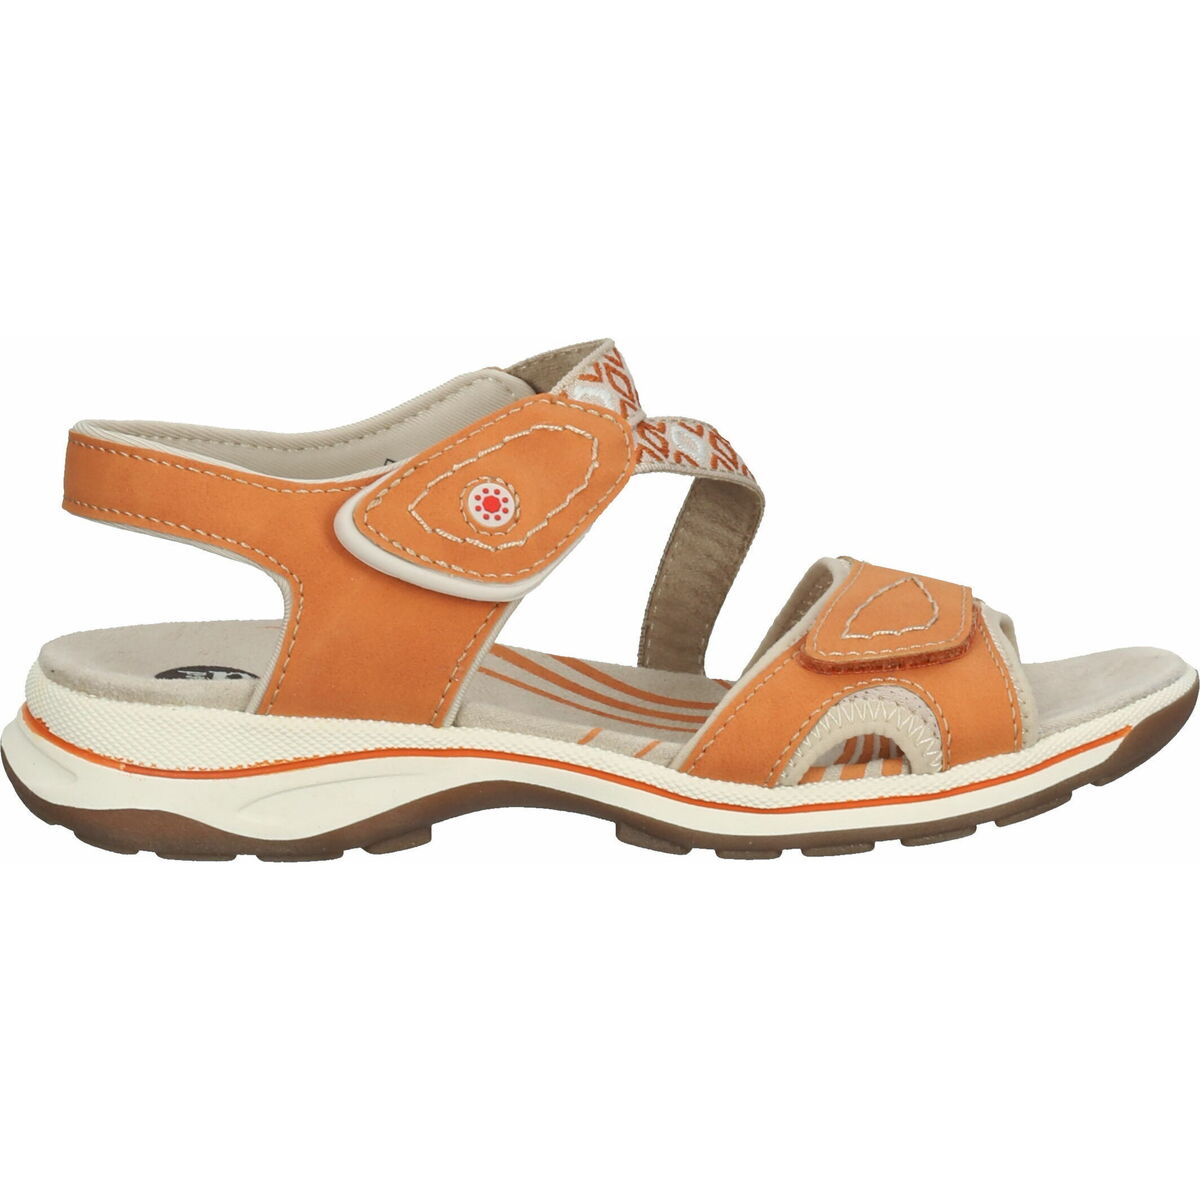 Chaussures Femme Sandales sport Bama Chaussures de randonnées Orange